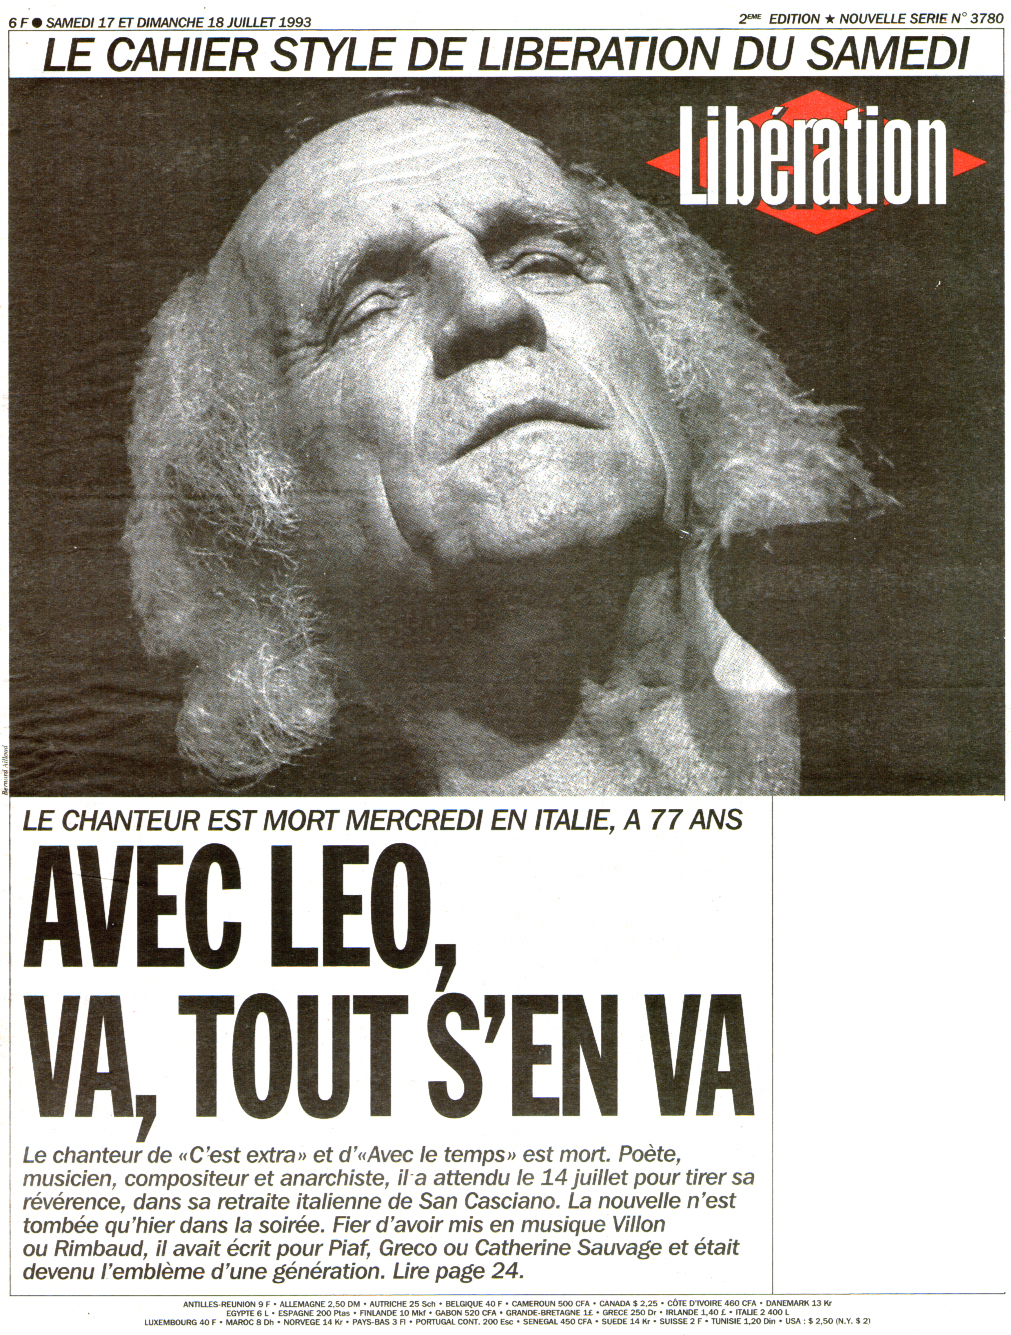 Léo Ferré - Libération N°3780 du 17 et 18/07/1993